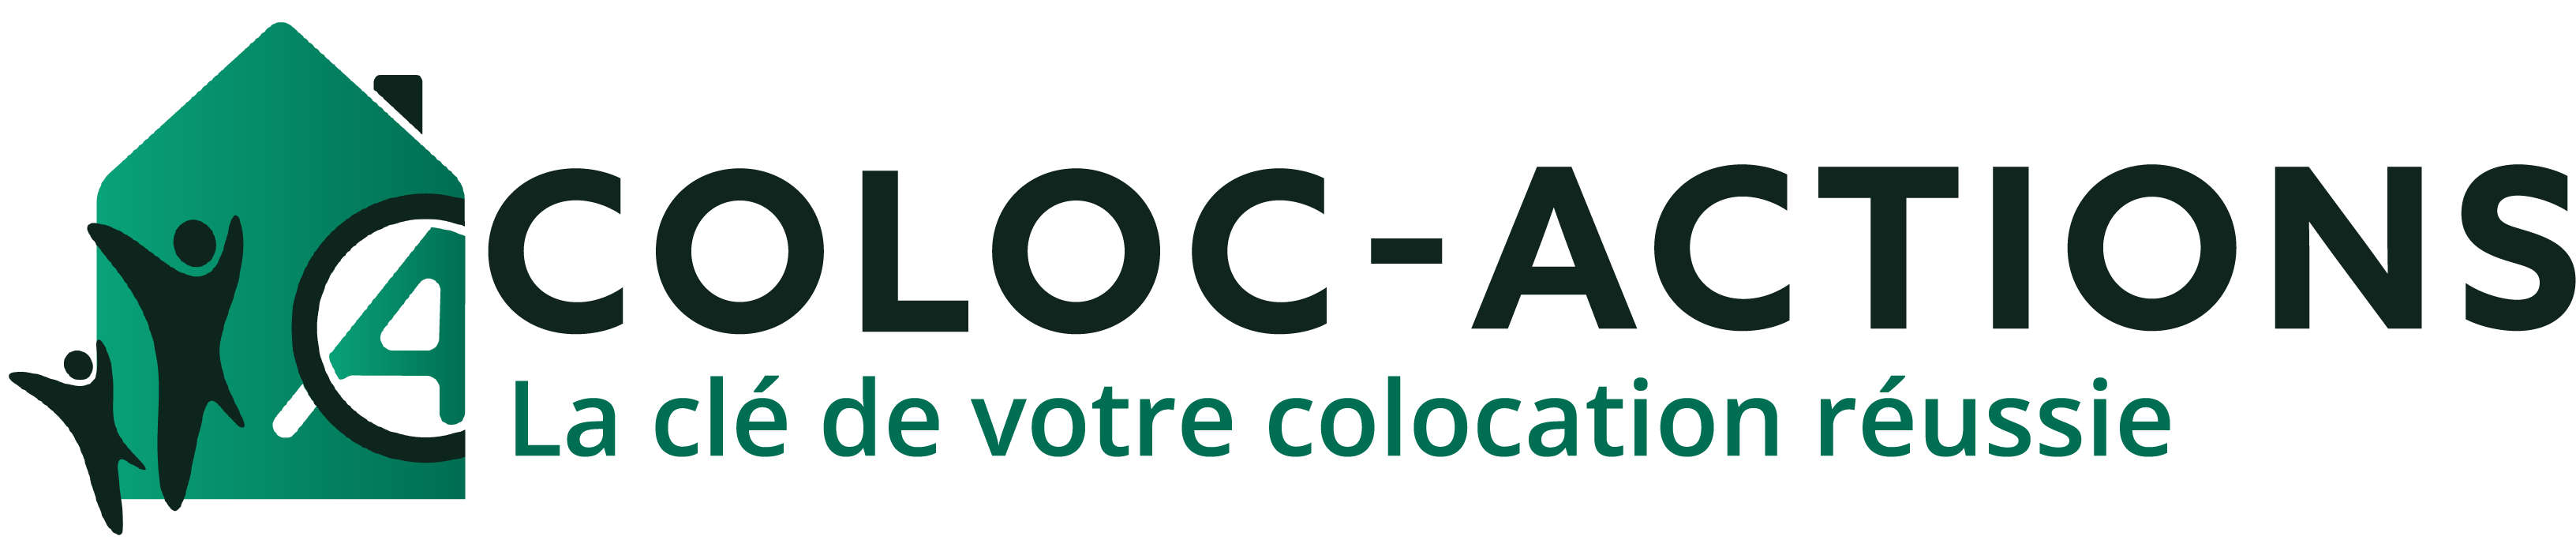 Coloc-acties